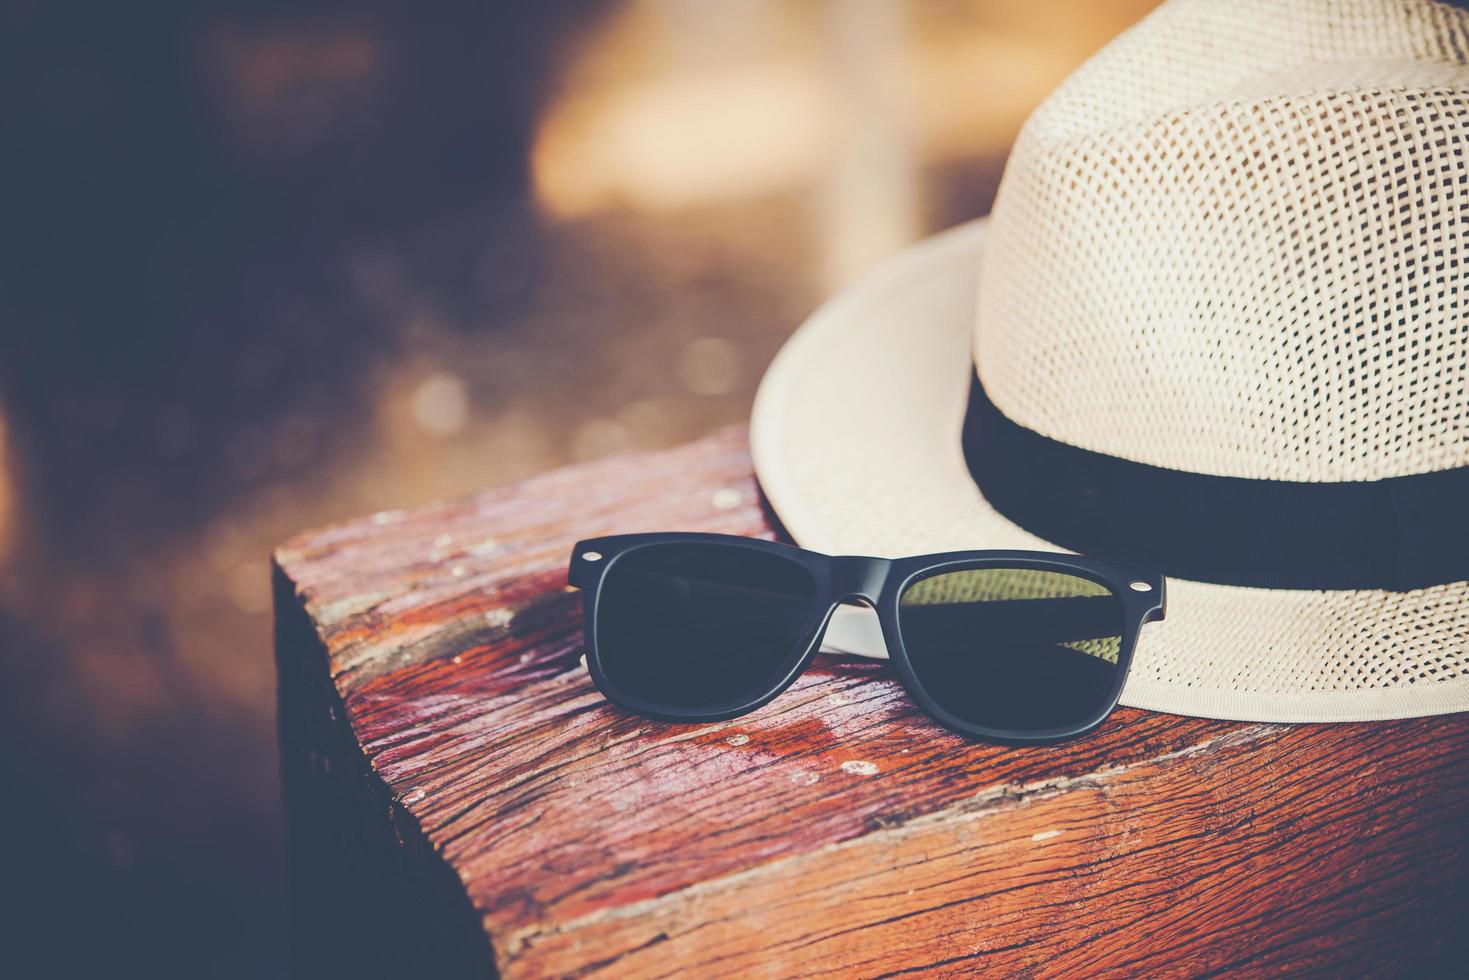 chapéu e óculos de sol no banco de madeira da estação ferroviária foto